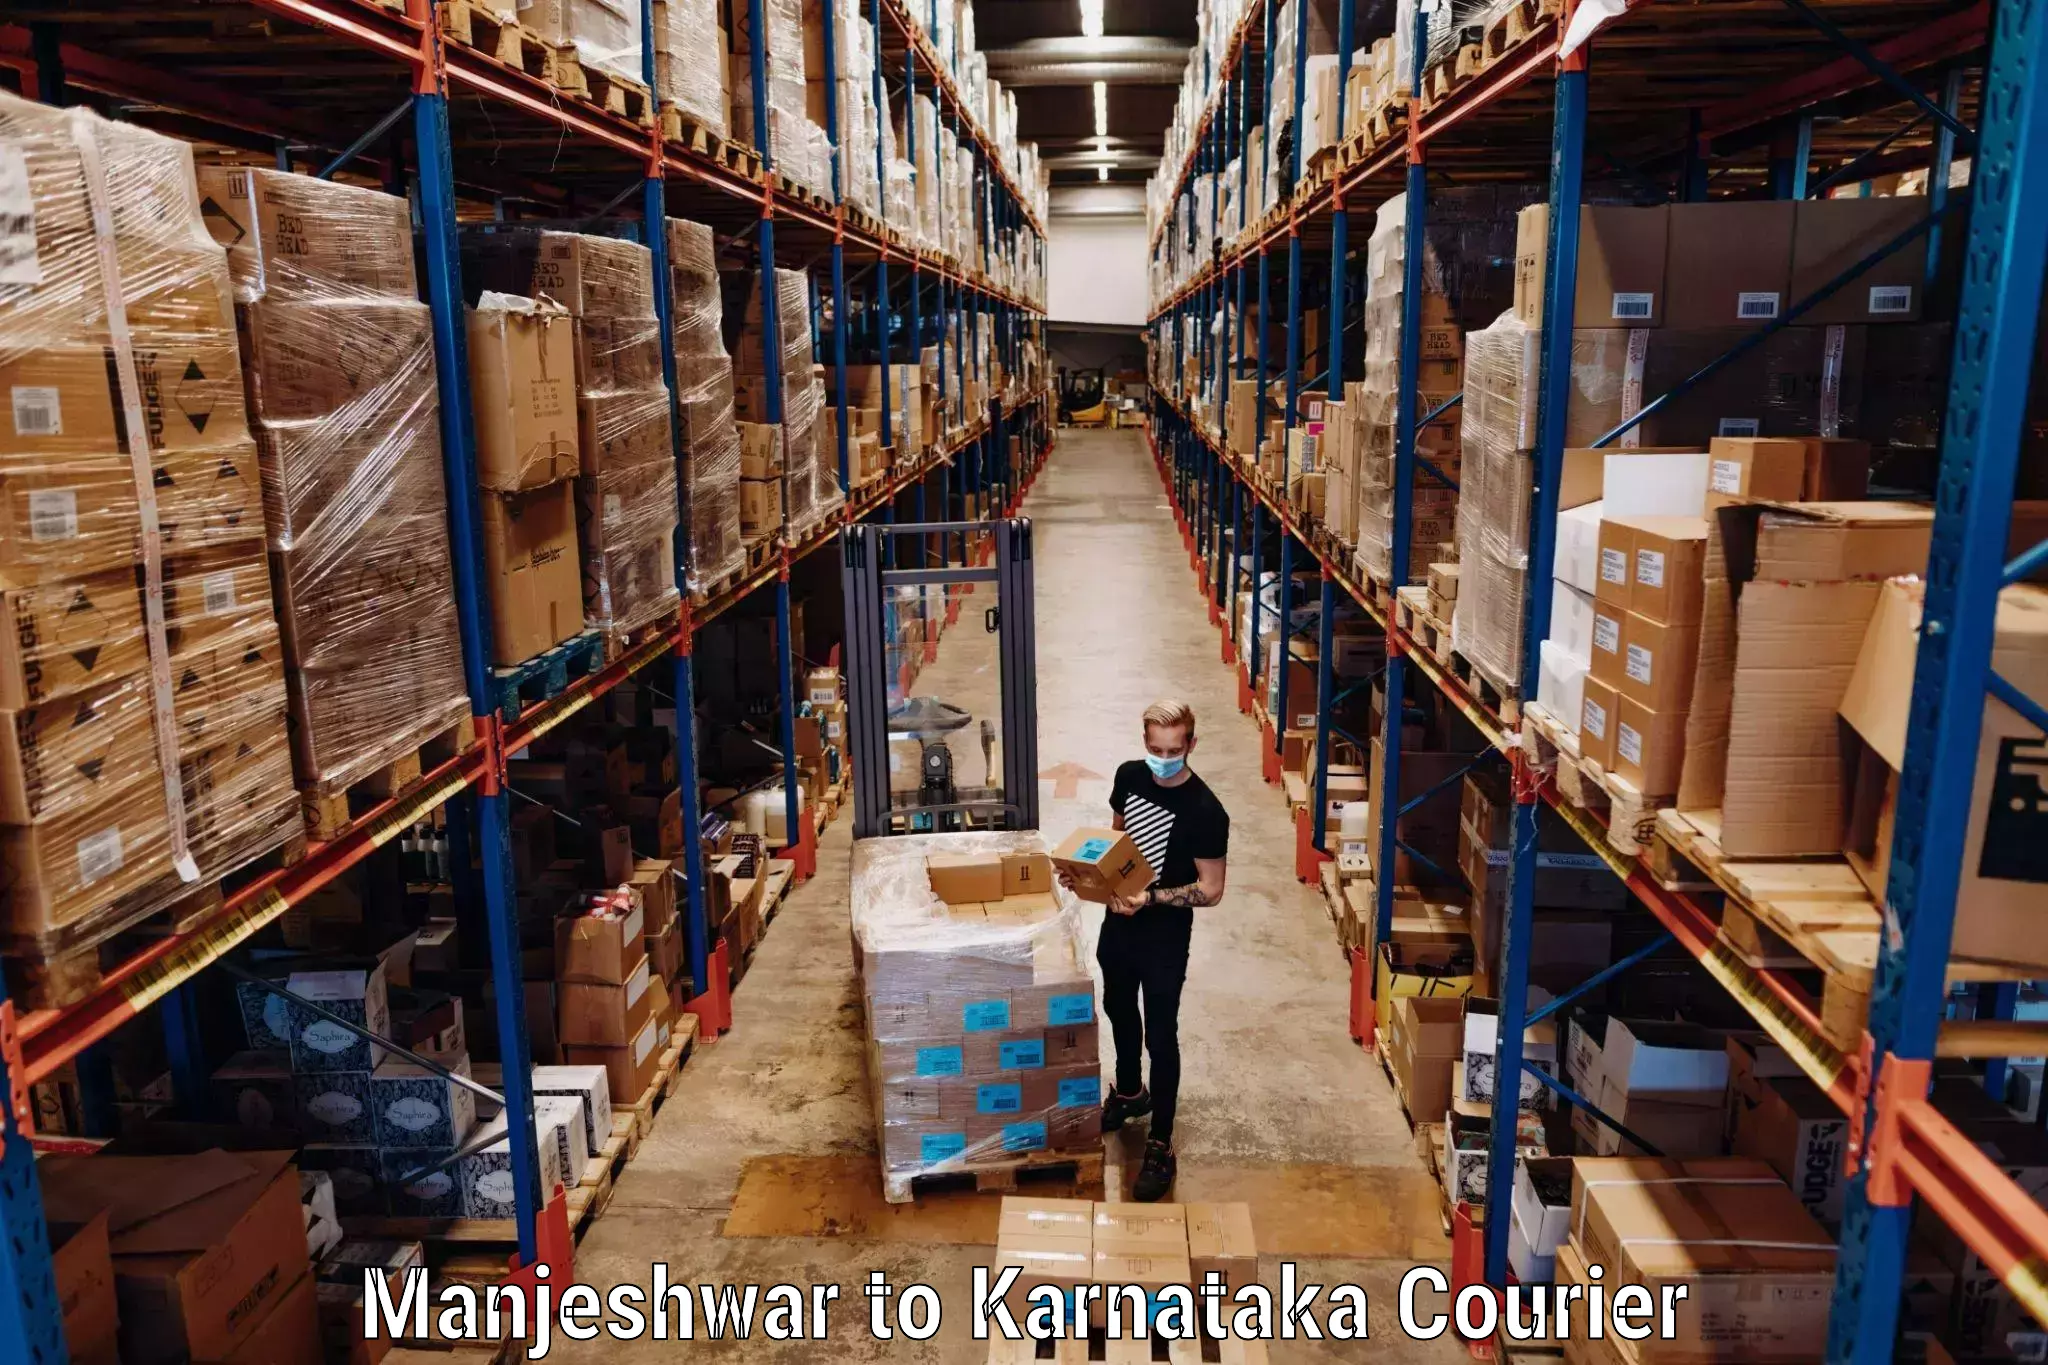 Luggage transport company Manjeshwar to Karnataka